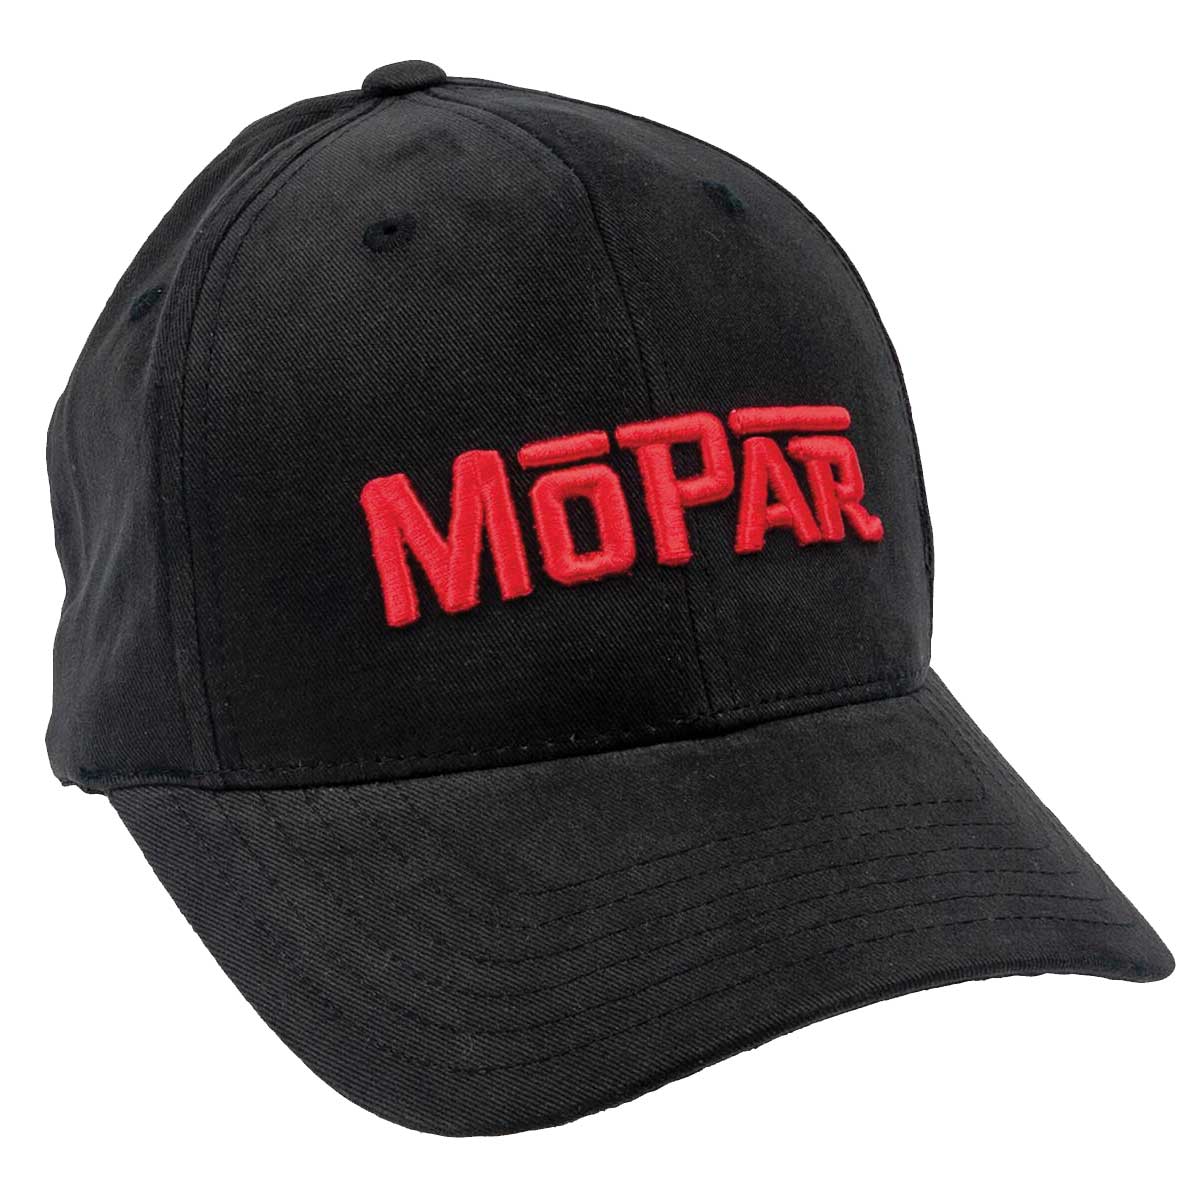 www.nexpart.de - BASEBALL CAP MOPAR